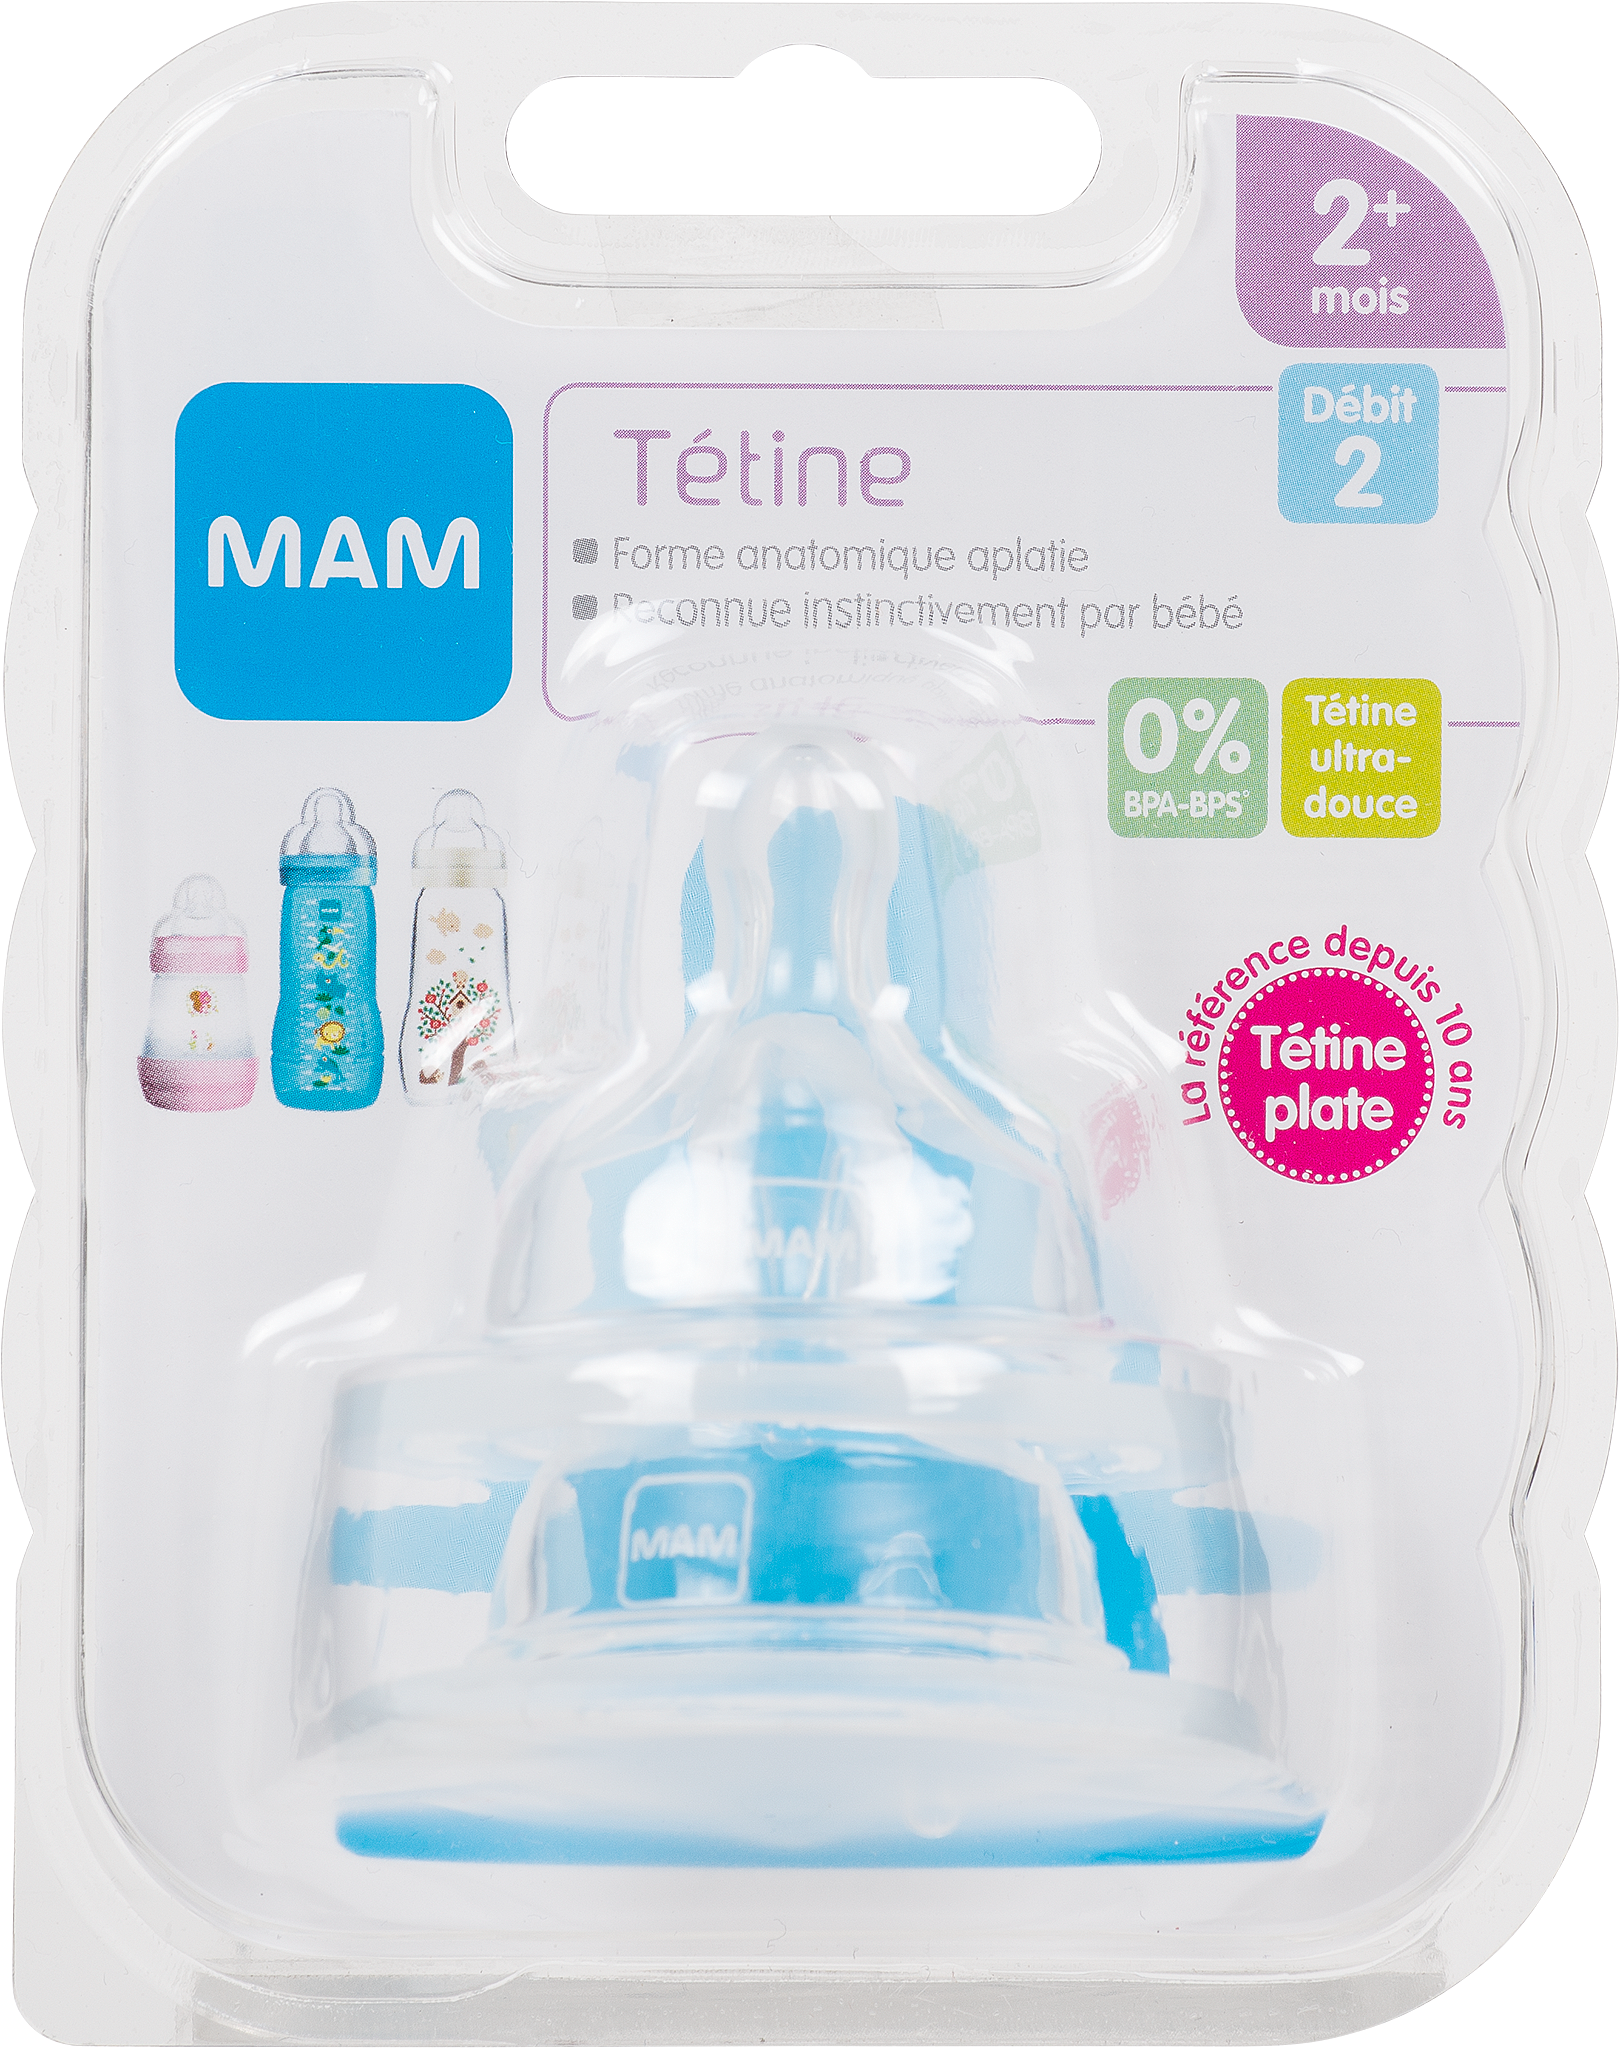 MAM Tétine 0 mois+ - Tétine bébé en silicone débit 1 - Lot de 2